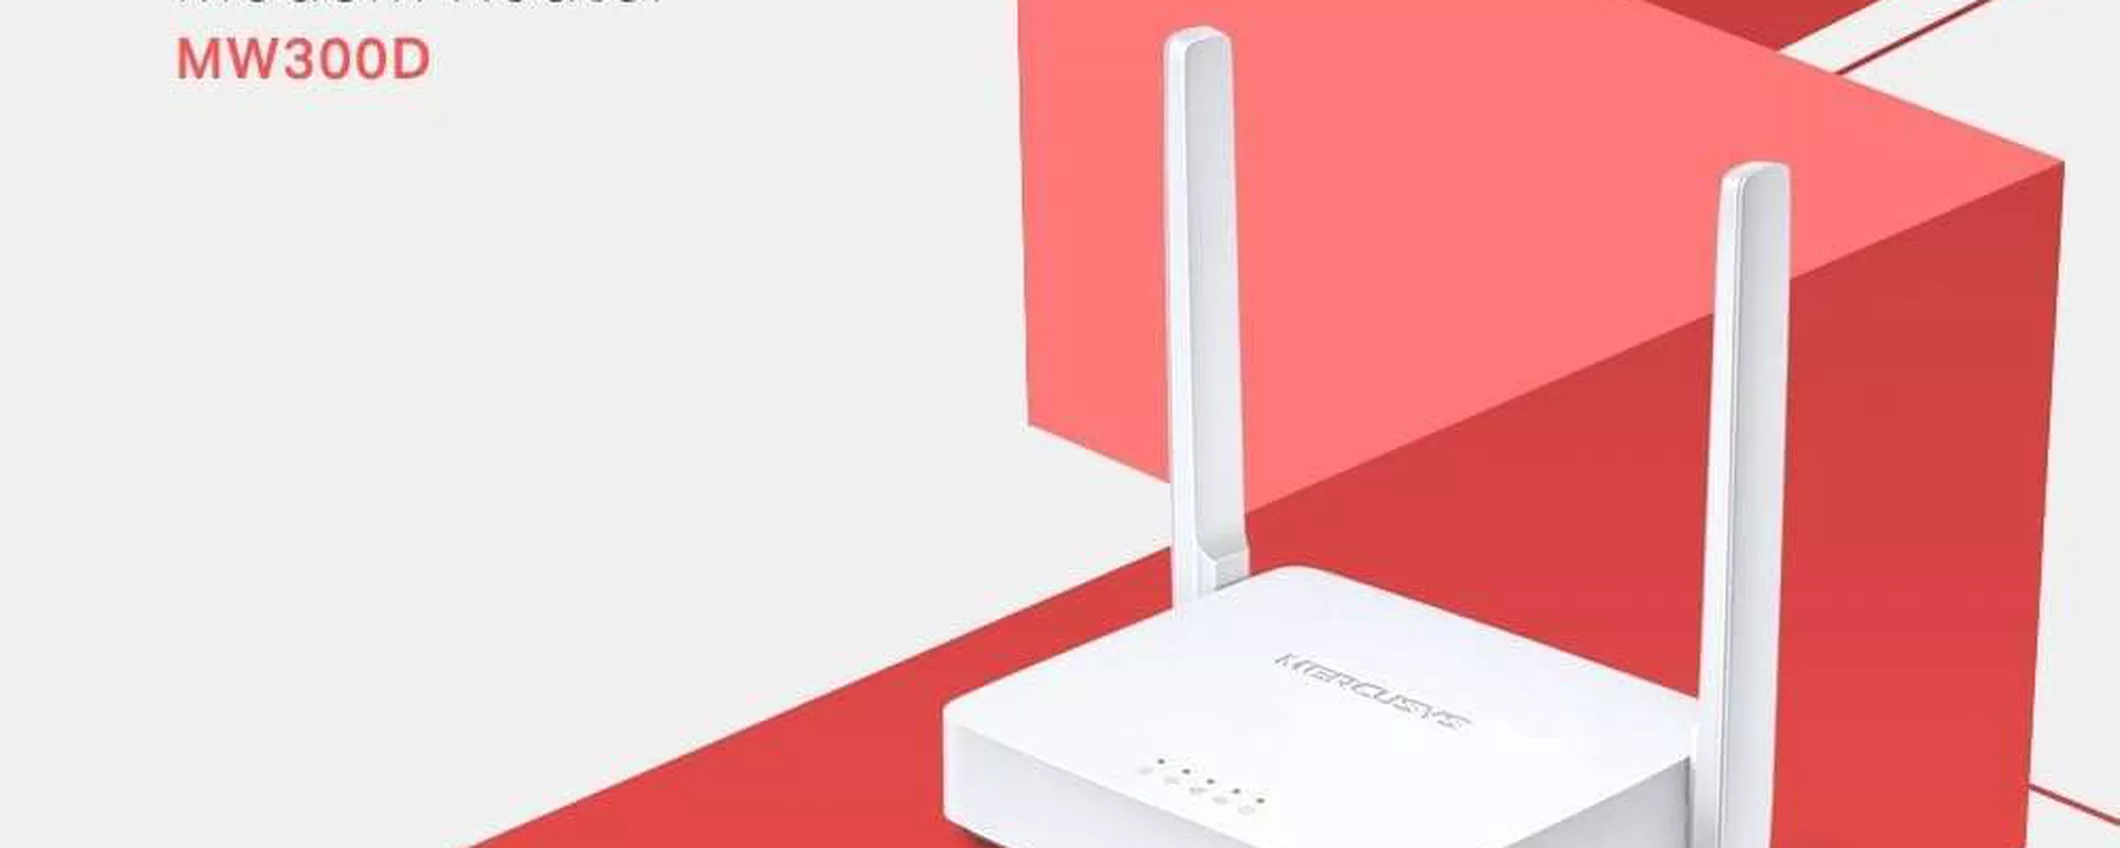 Connessione facile e veloce ovunque: con la saponetta Wi-Fi è possibile e  costa davvero poco - SoloFinanza